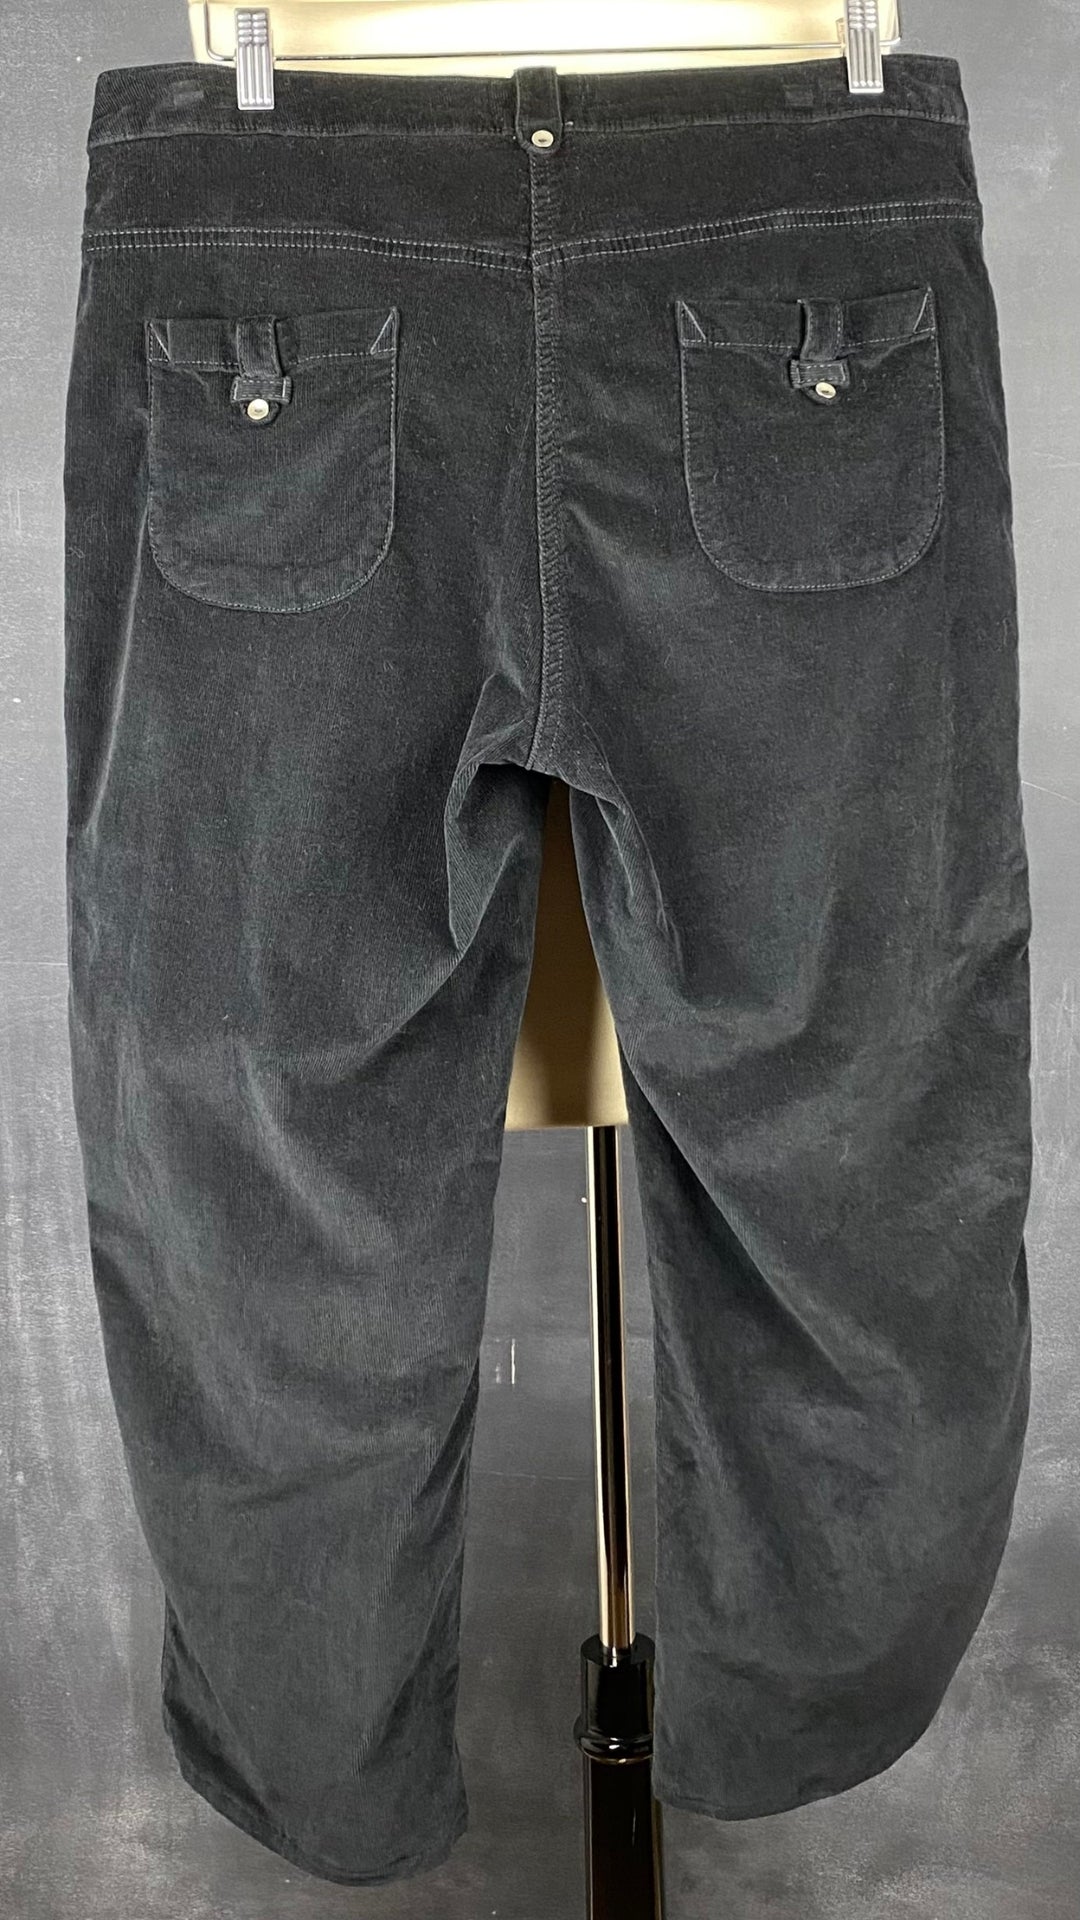 Pantalon en fin velours côtelé noir à jambes larges Saint-James, taille 14. Vue de dos.